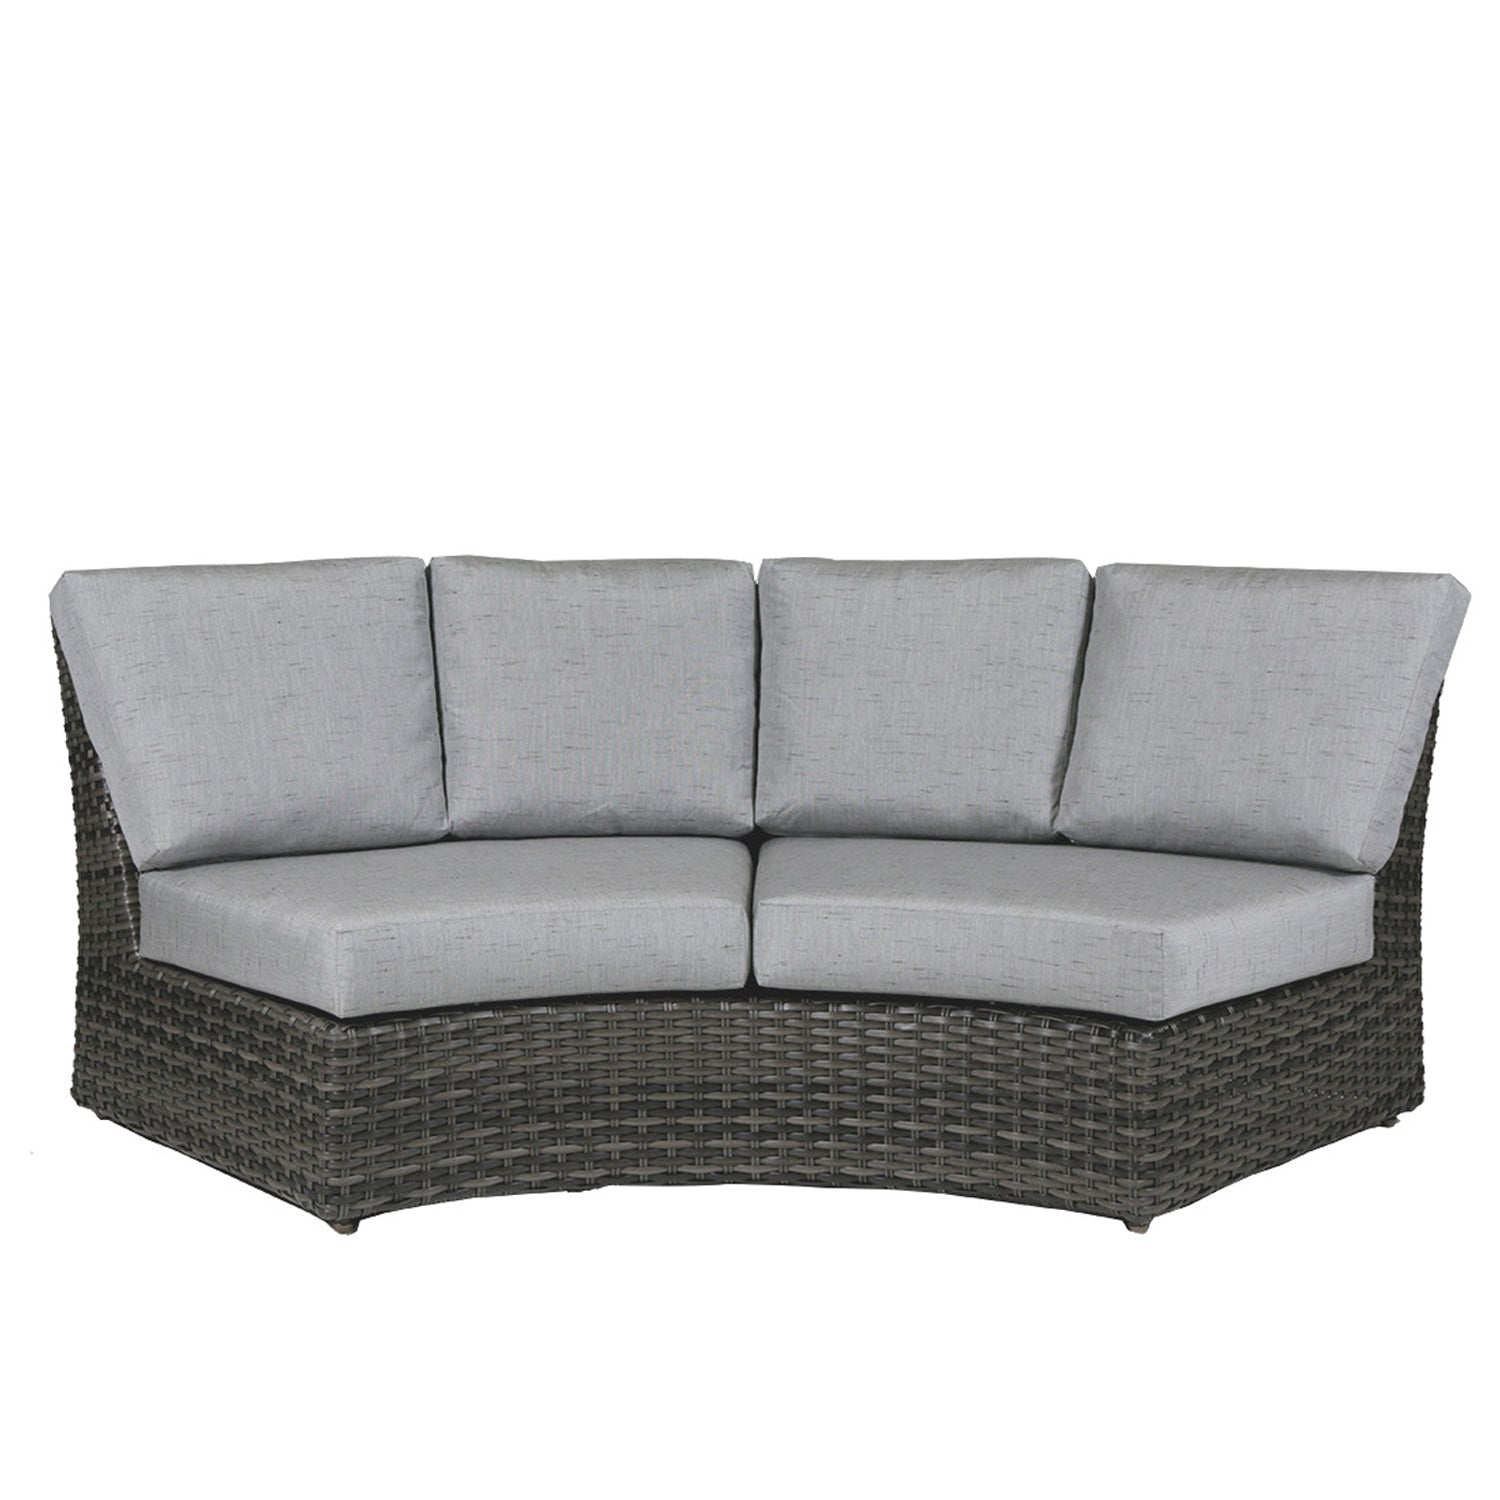 Portfino Sectional - Curved Sofa